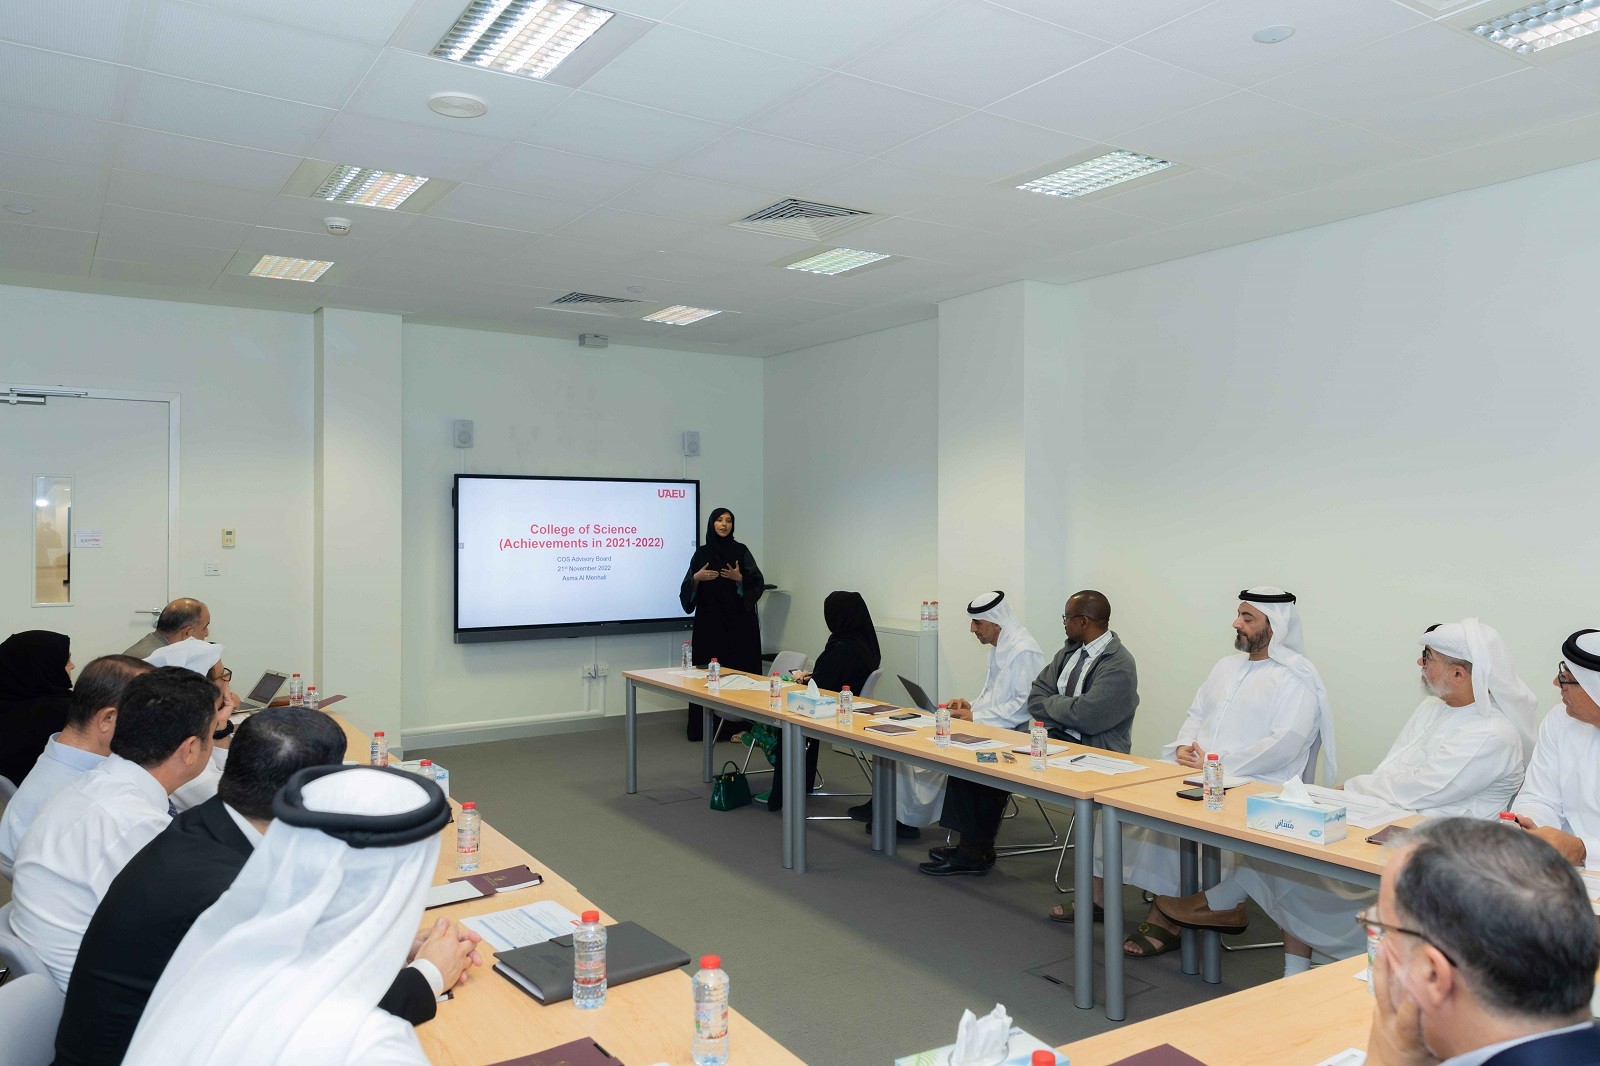 المجلس الاستشاري لكلية العلوم بجامعة الامارات يبحث استحداث برامج جديدة وفرص التدريب والتوظيف للخرجين